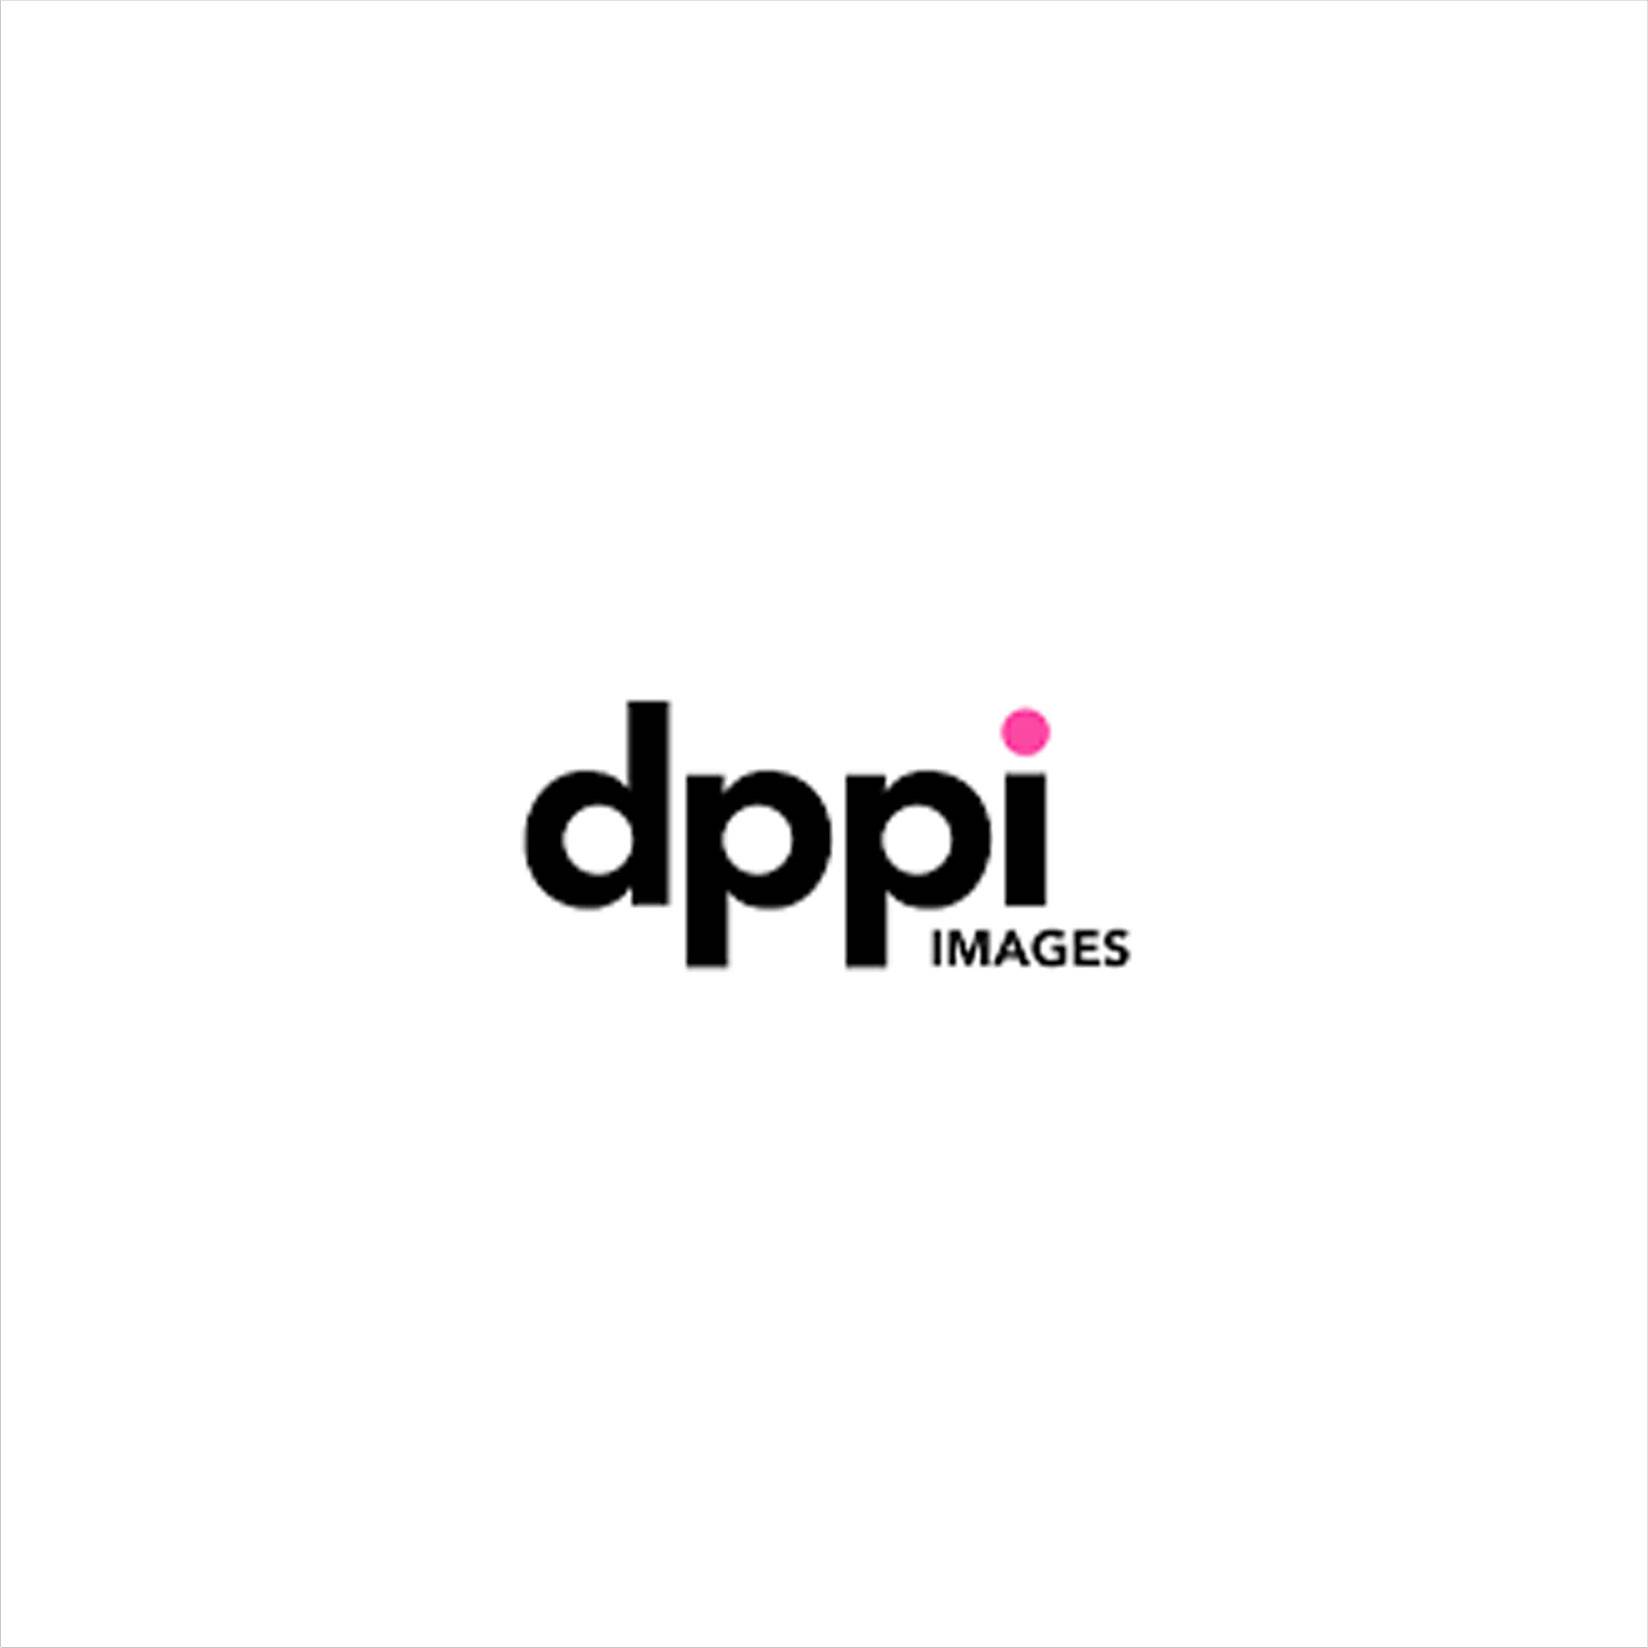 Logo de l'agence de press Dppi Images ou Dppi Media